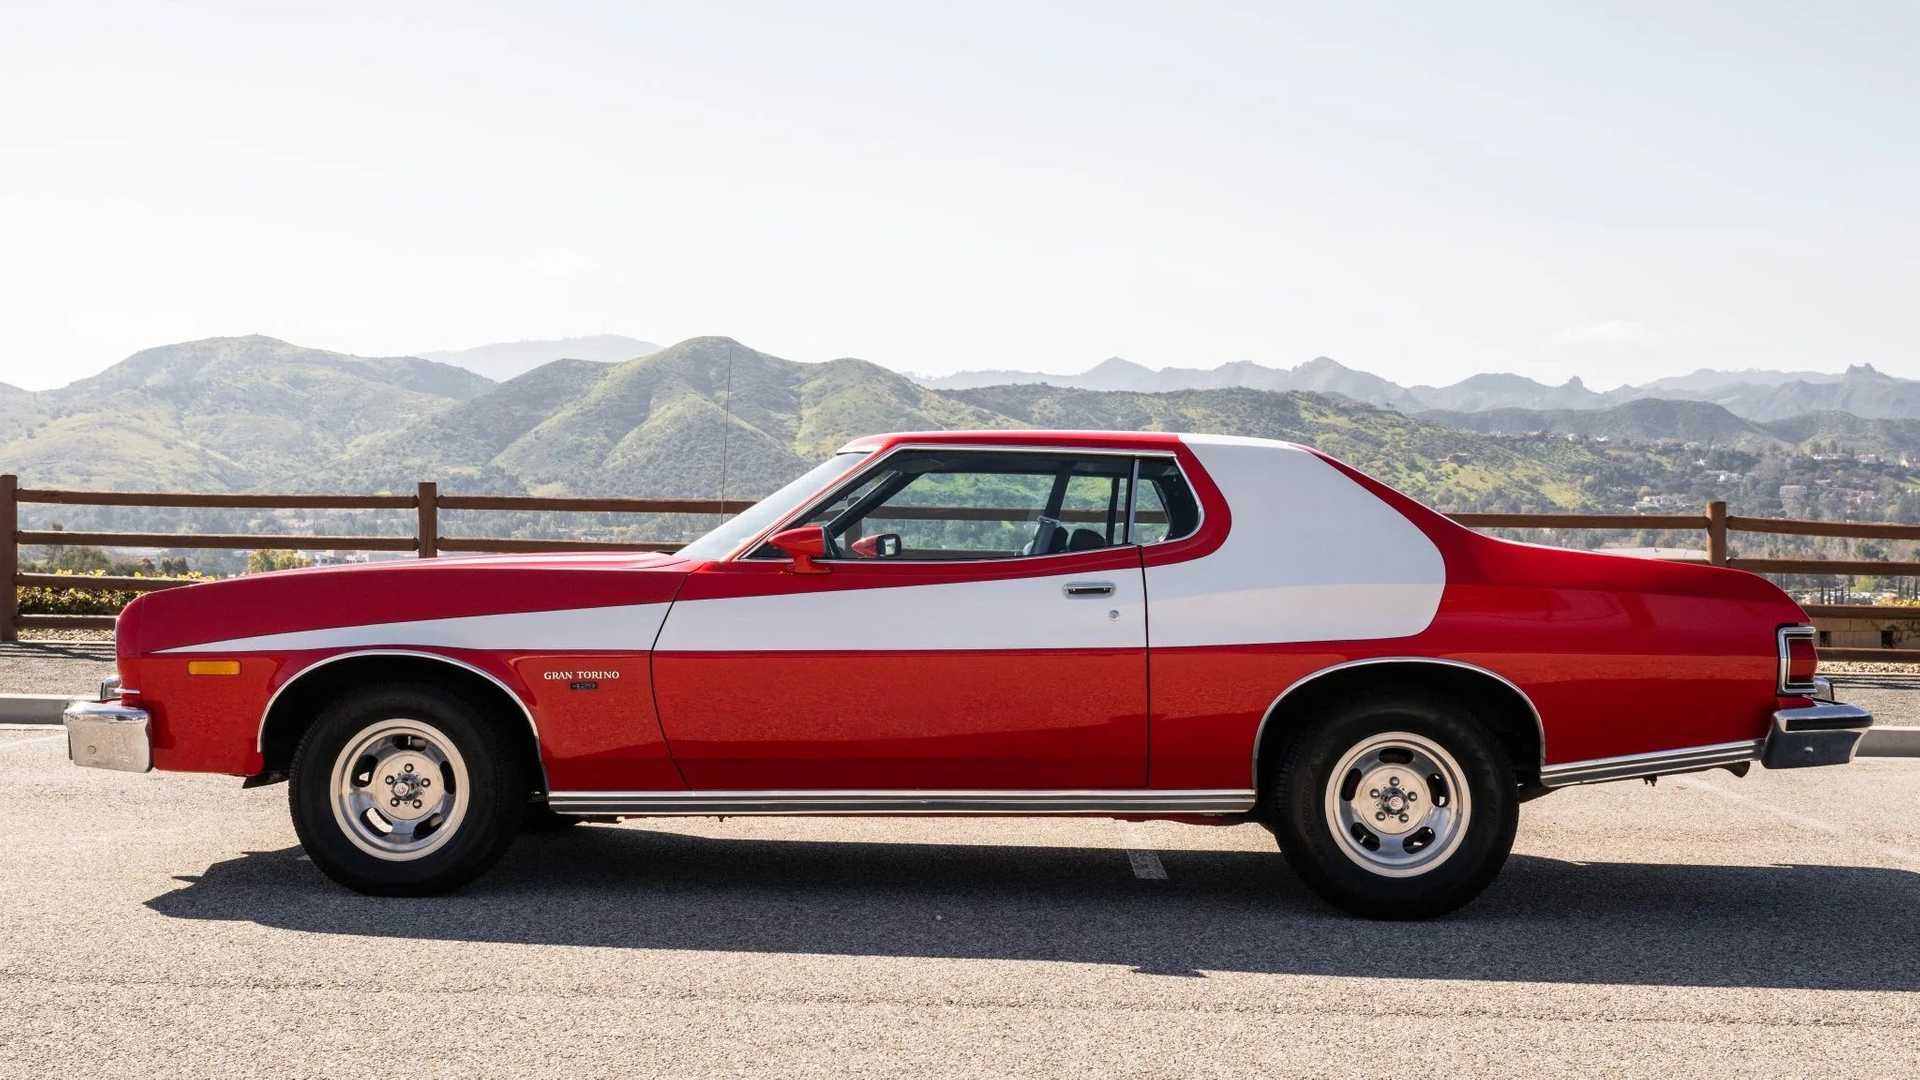 Ford Gran Torino 1975